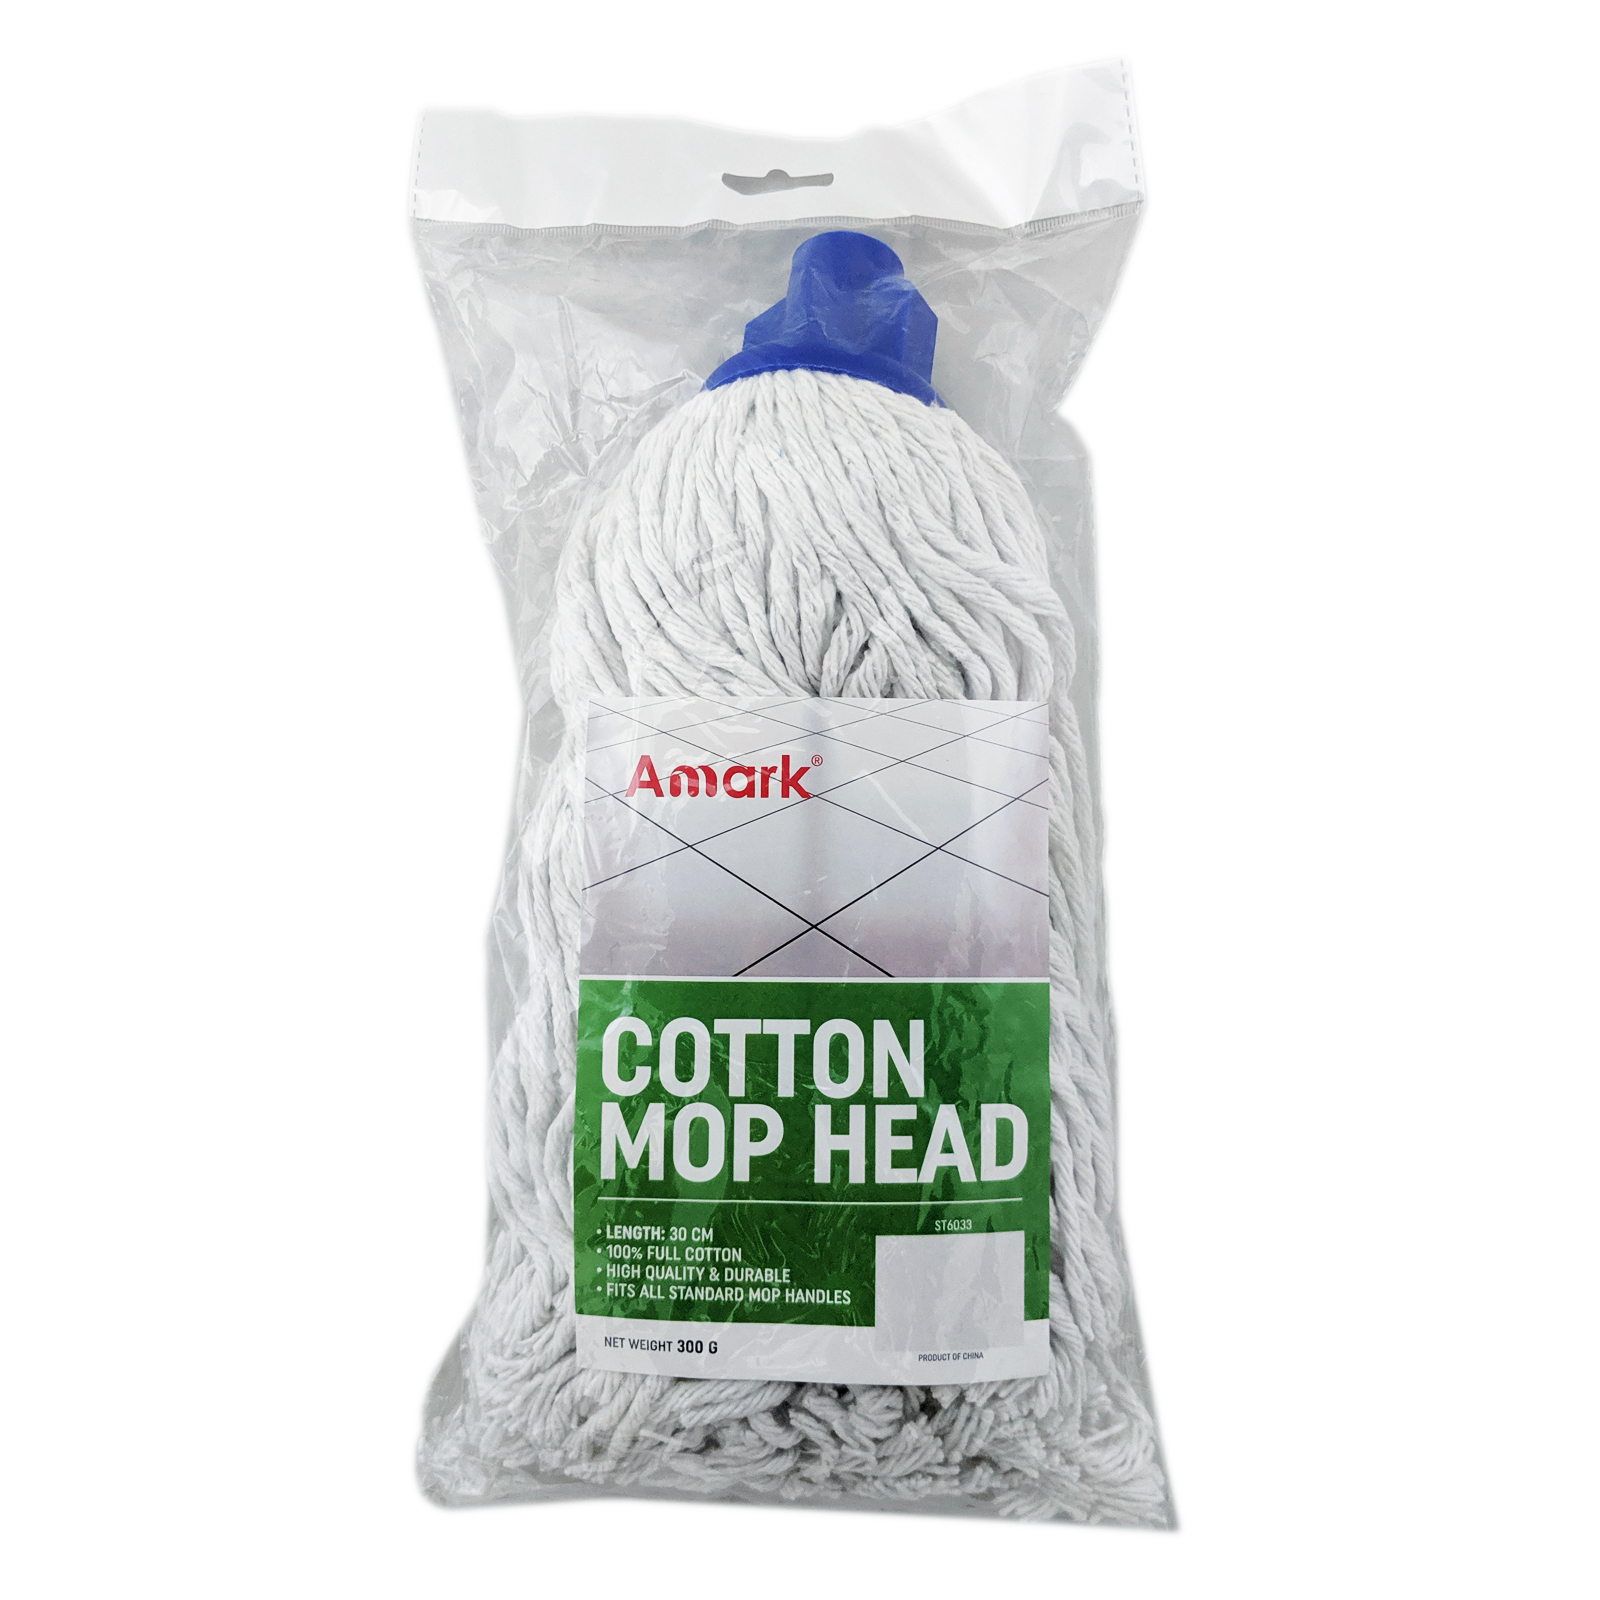 Amark Cotton Mop Head 300g